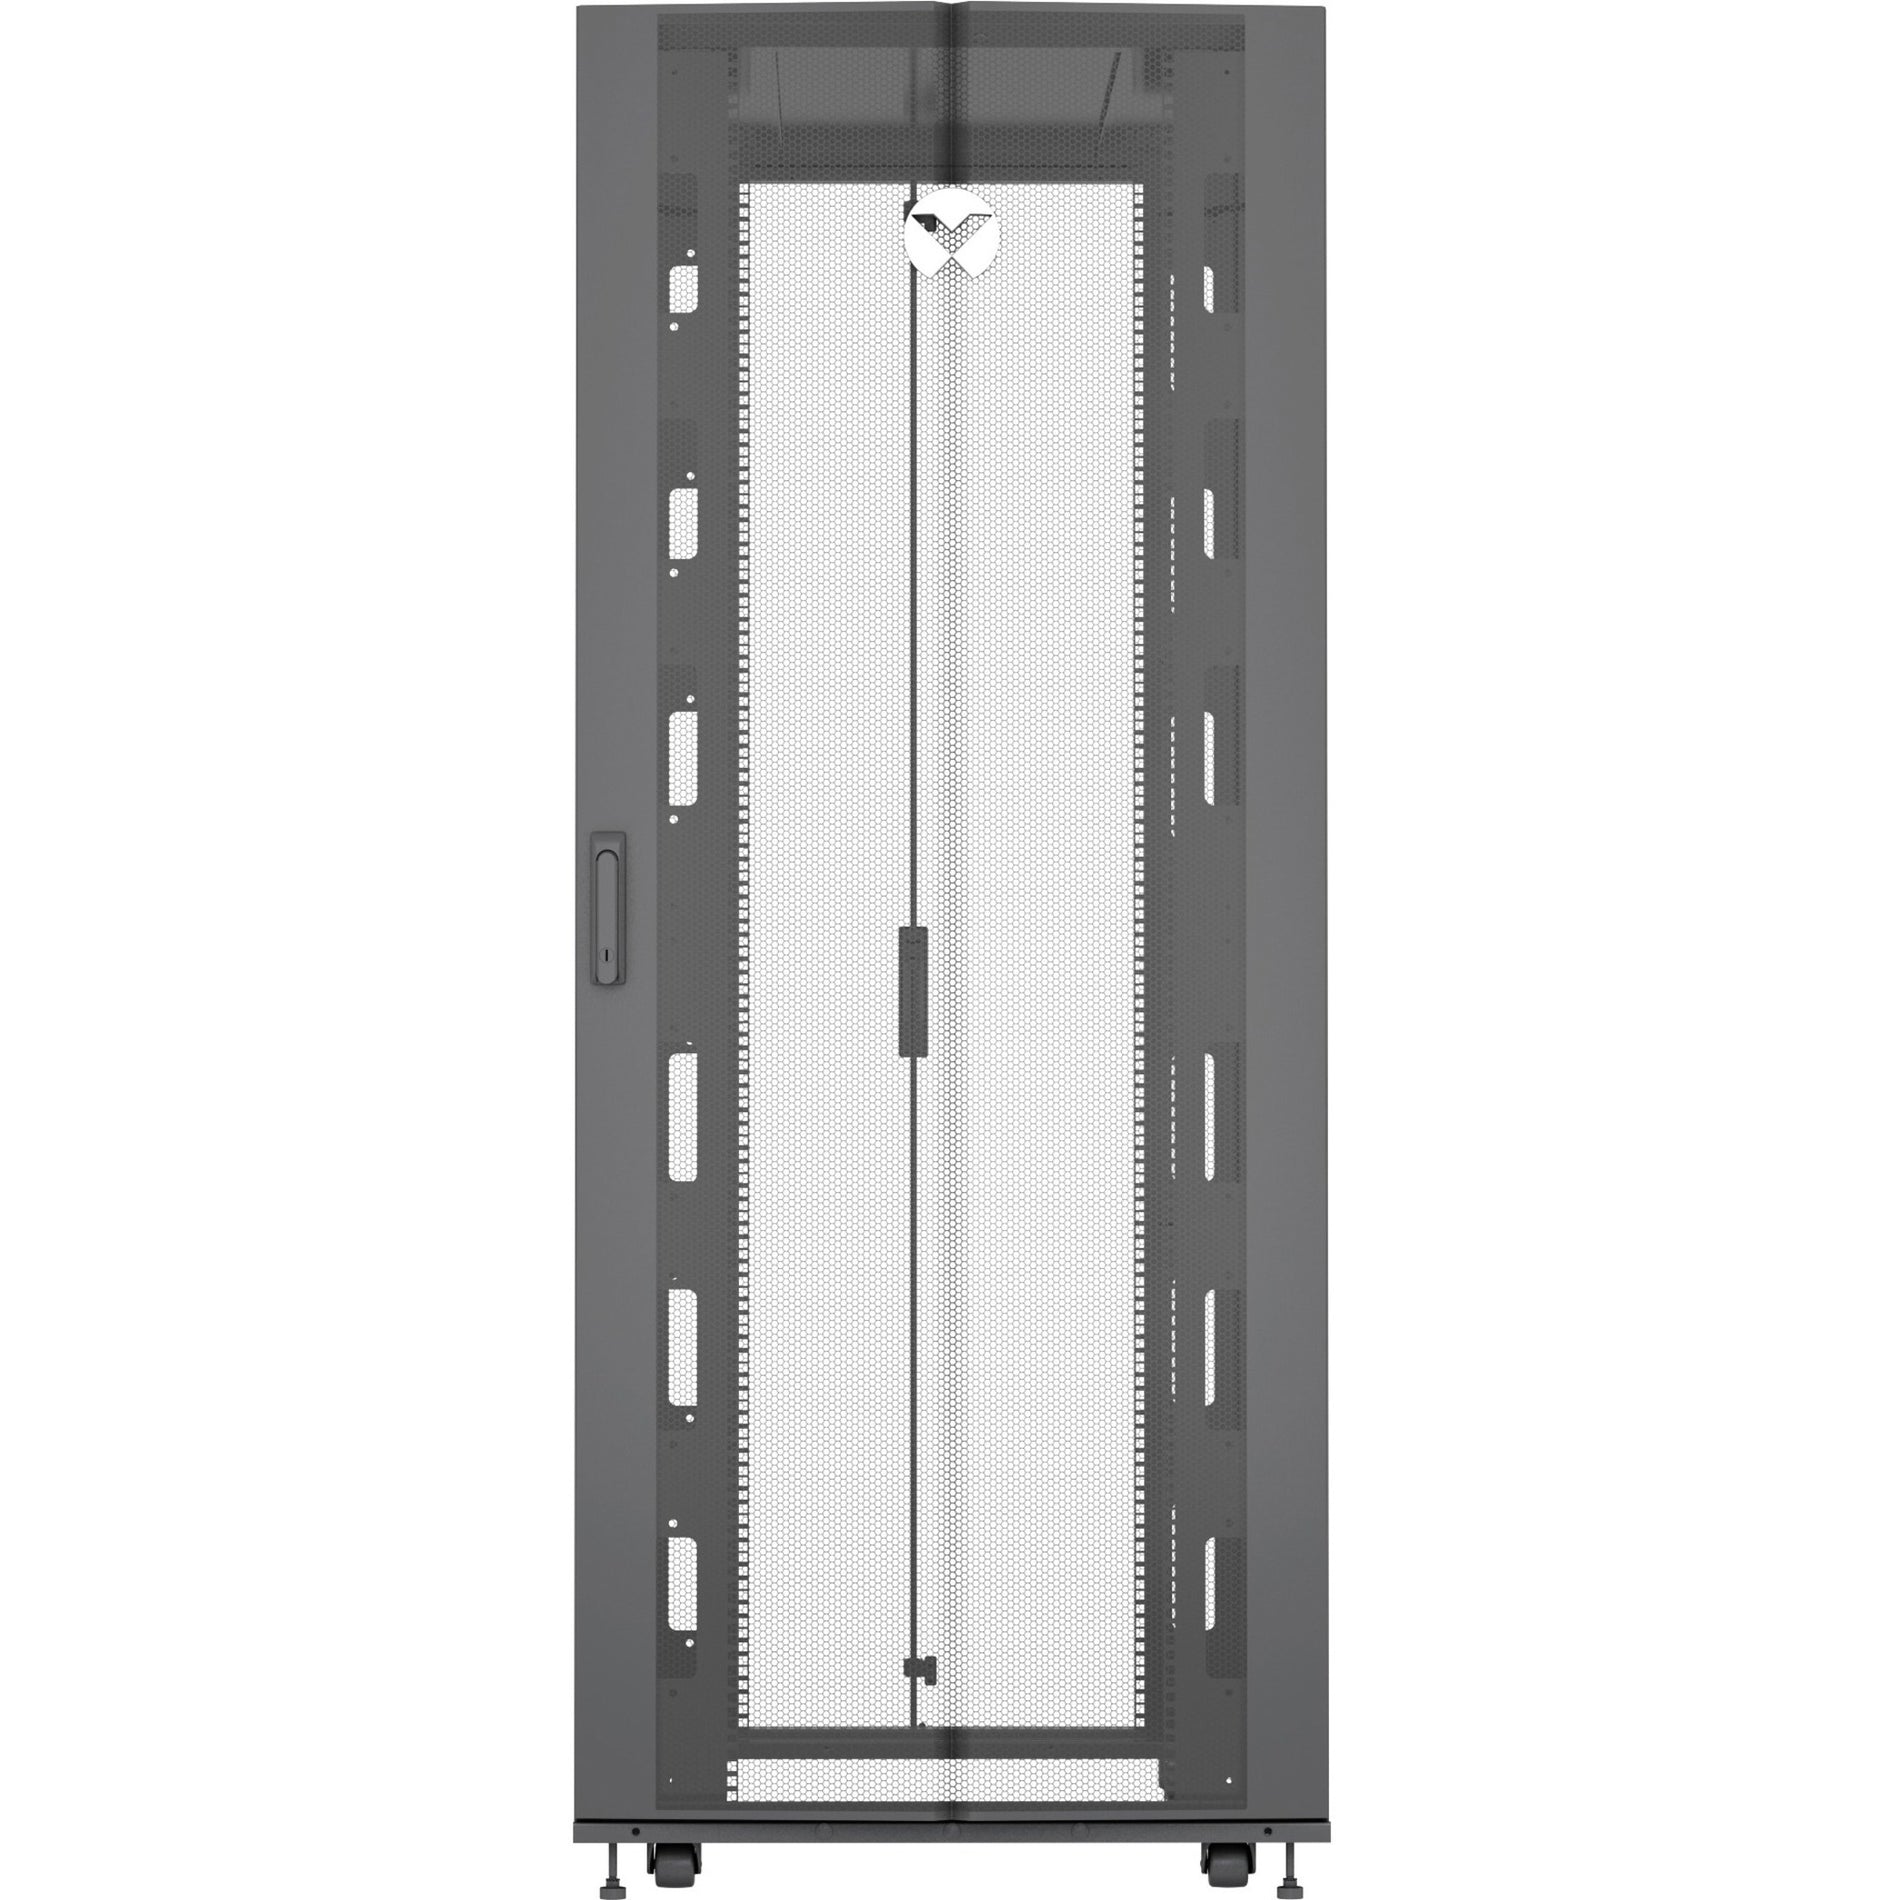 VERTIV VR3300 Vertiv VR Rack - 42U Server Rack Enclosure, 600x1200mm, 19-inch Cabinet